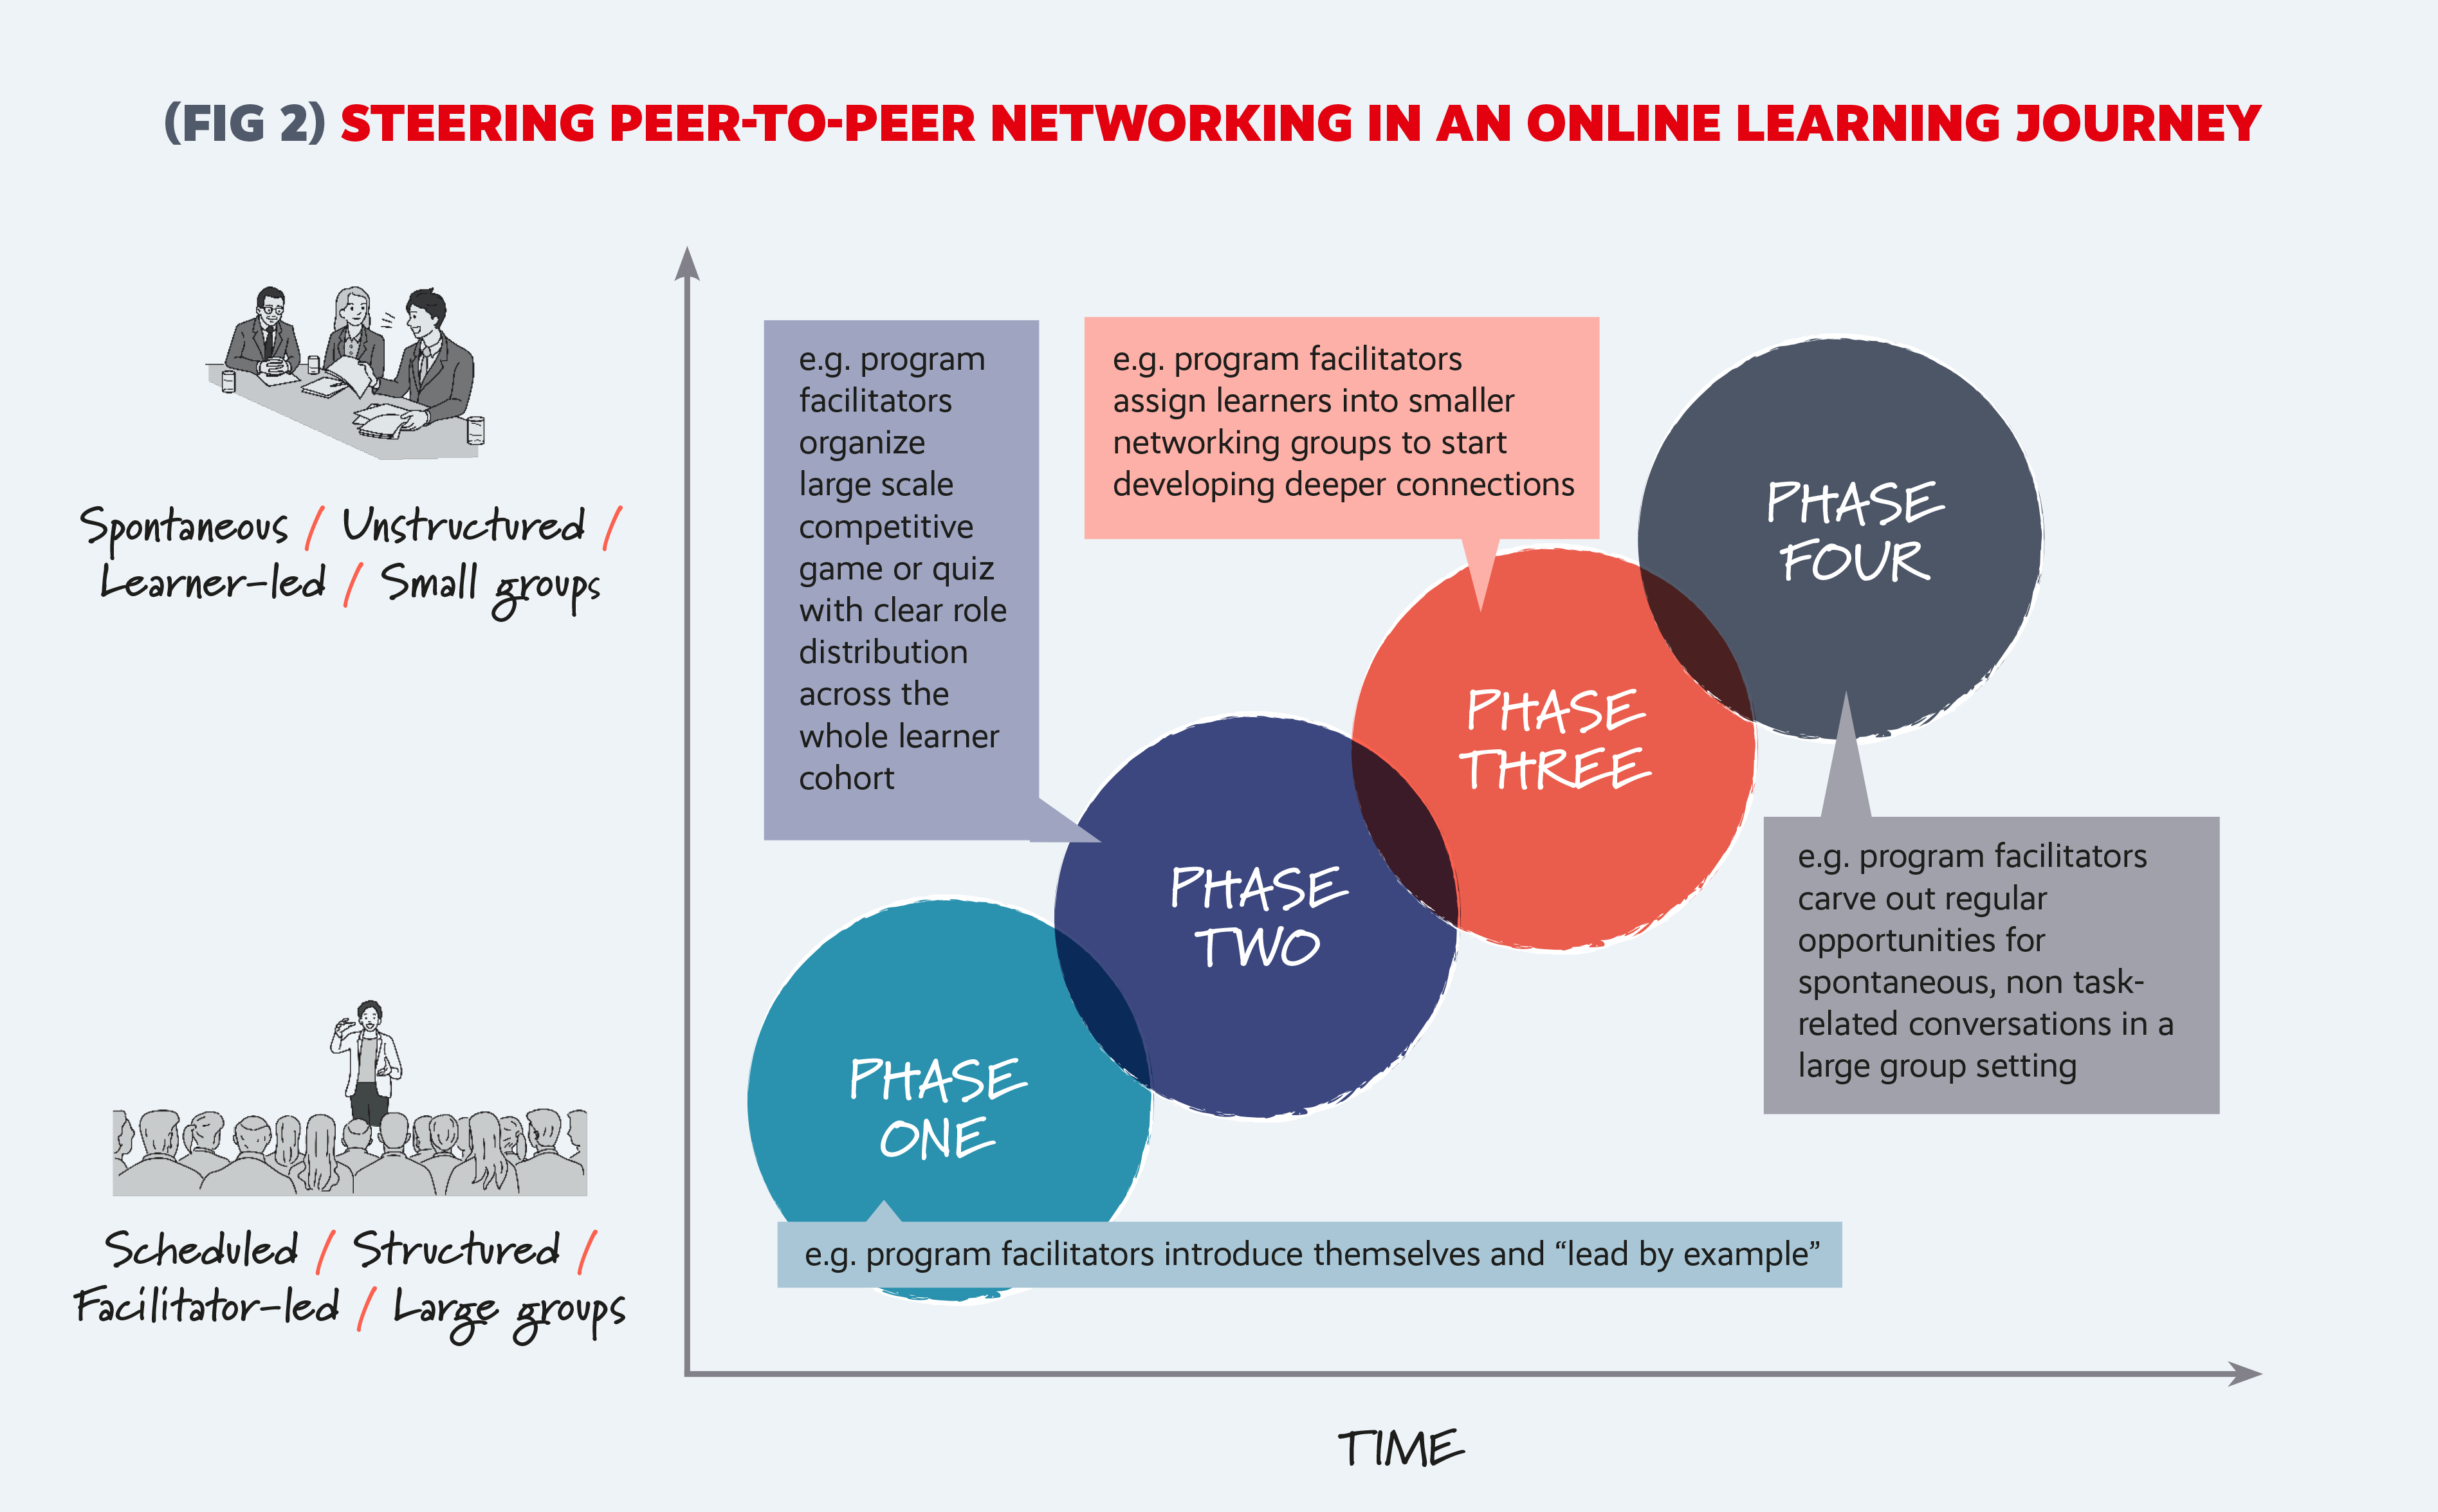 teering peer-to-peer networking in an online learning journey